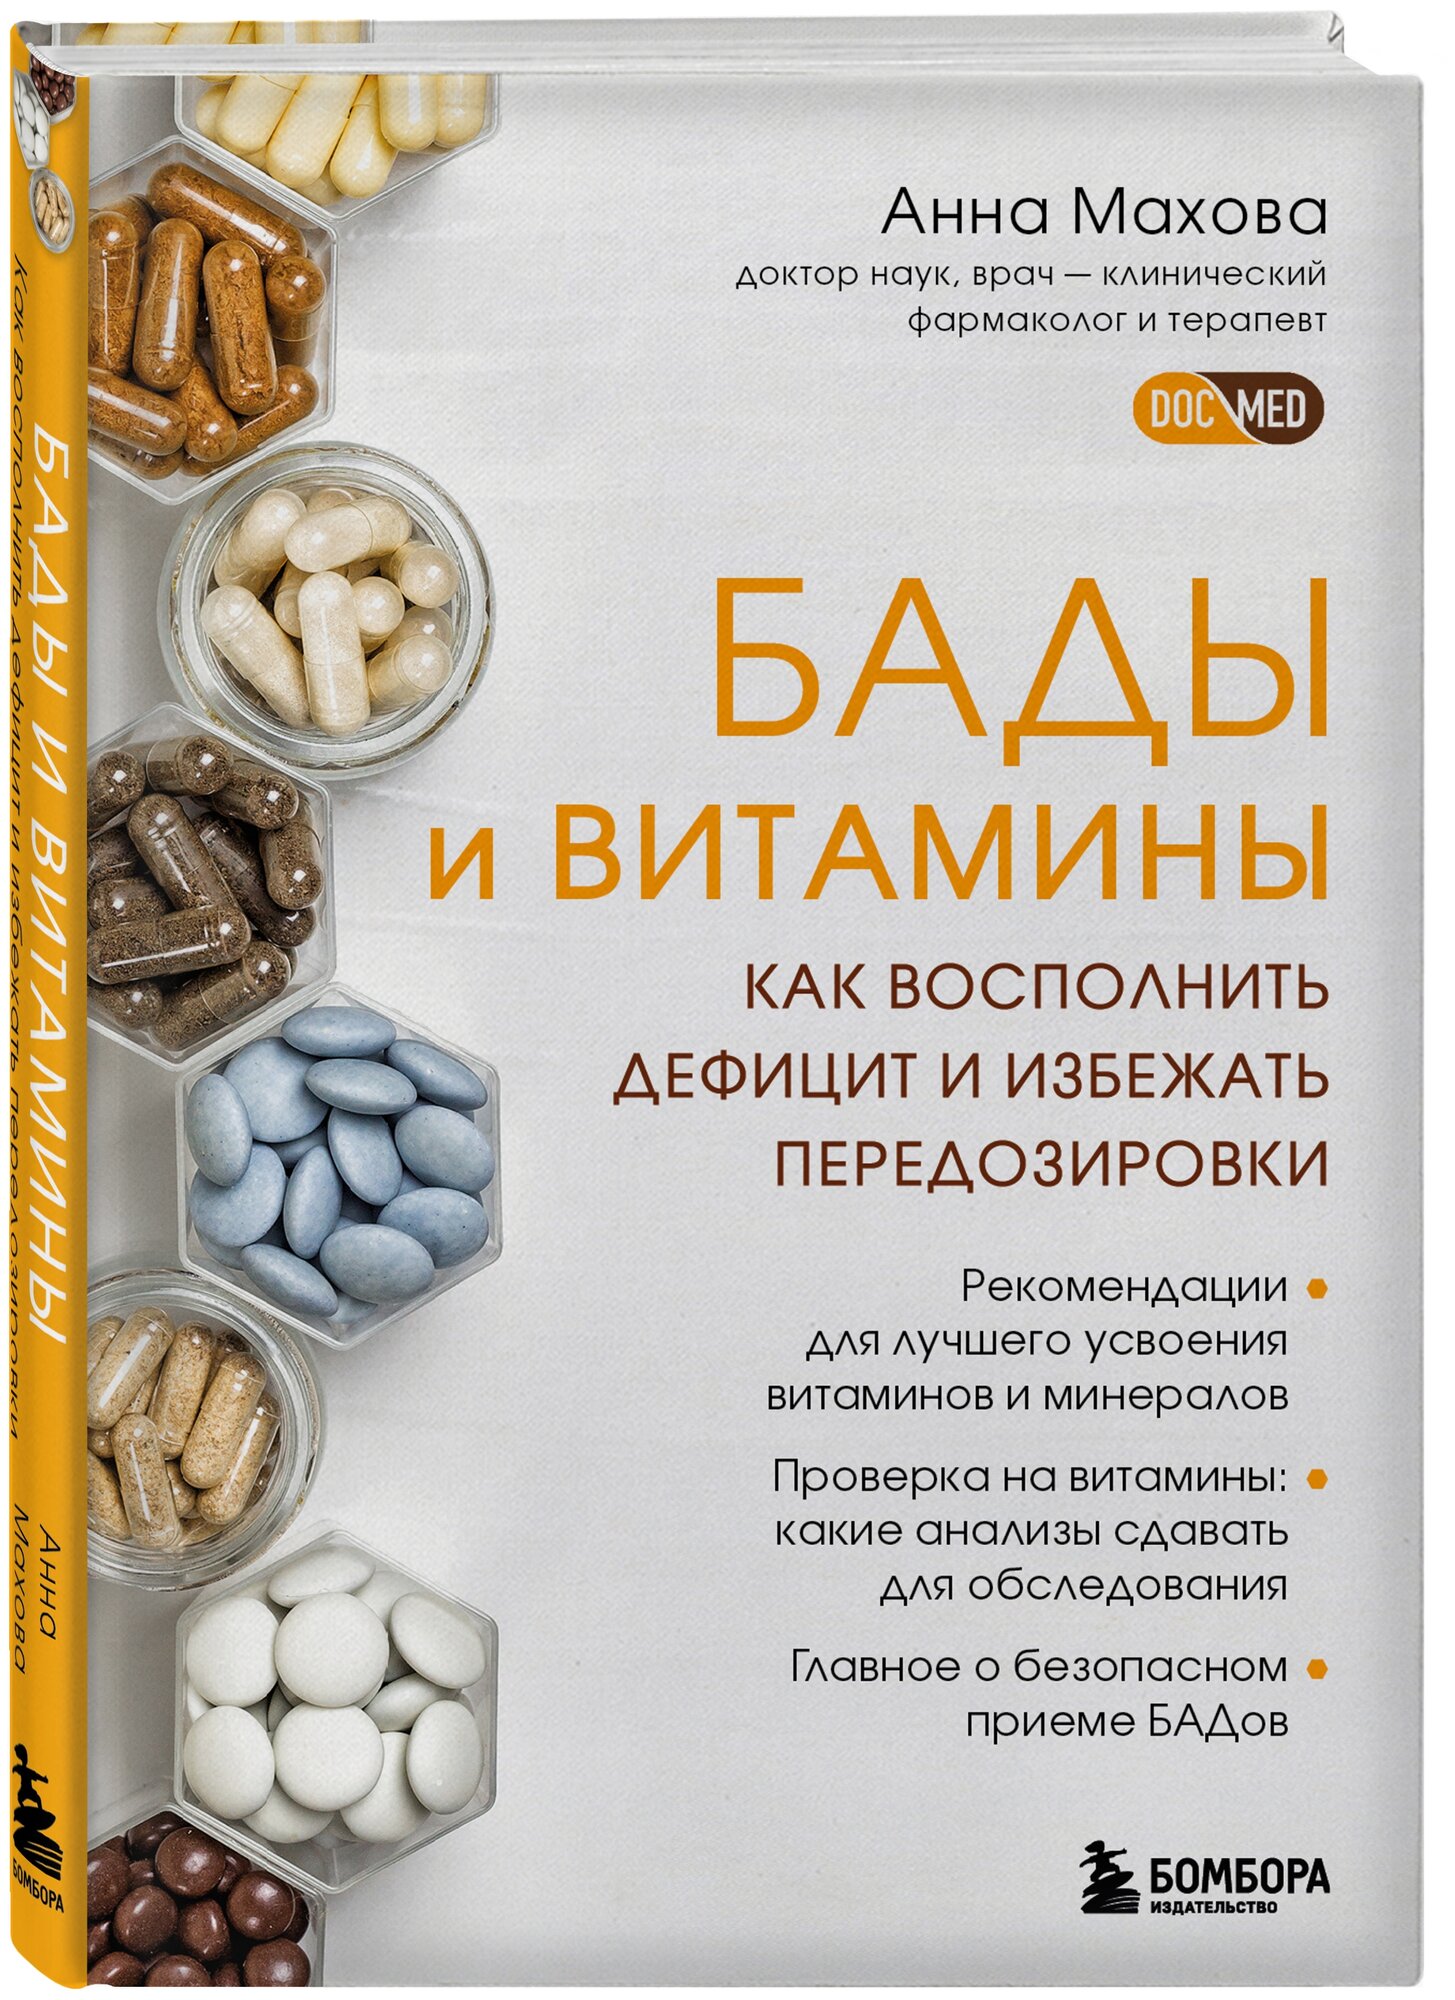 Махова А.А. "БАДы и витамины. Как восполнить дефицит и избежать передозировки"